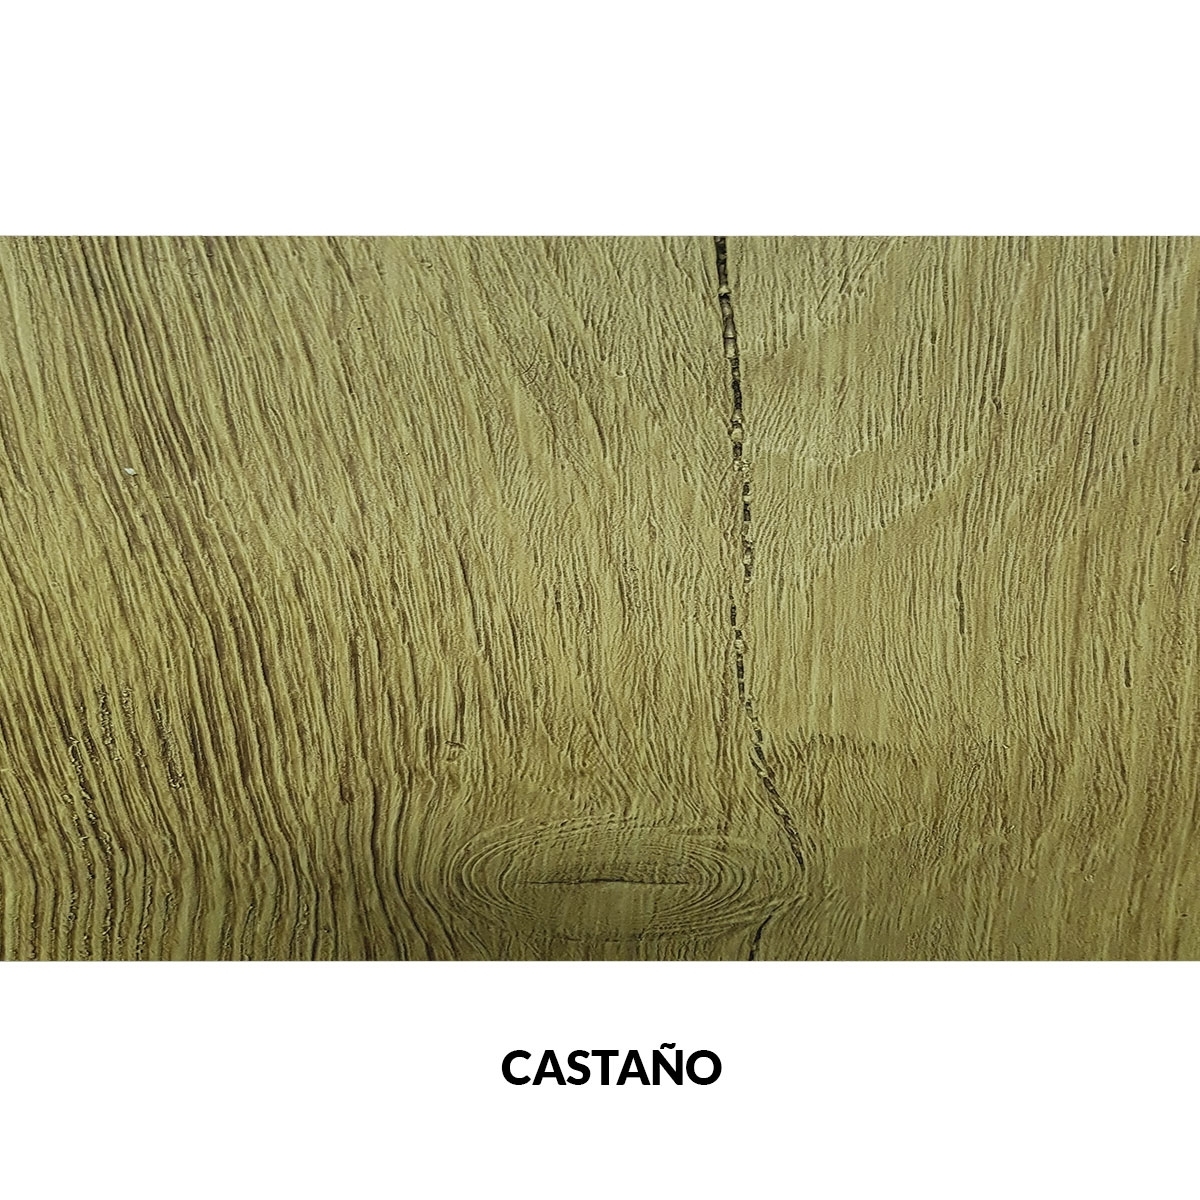 Panel rústico sin lamas imitación madera de 400x62cm castaño